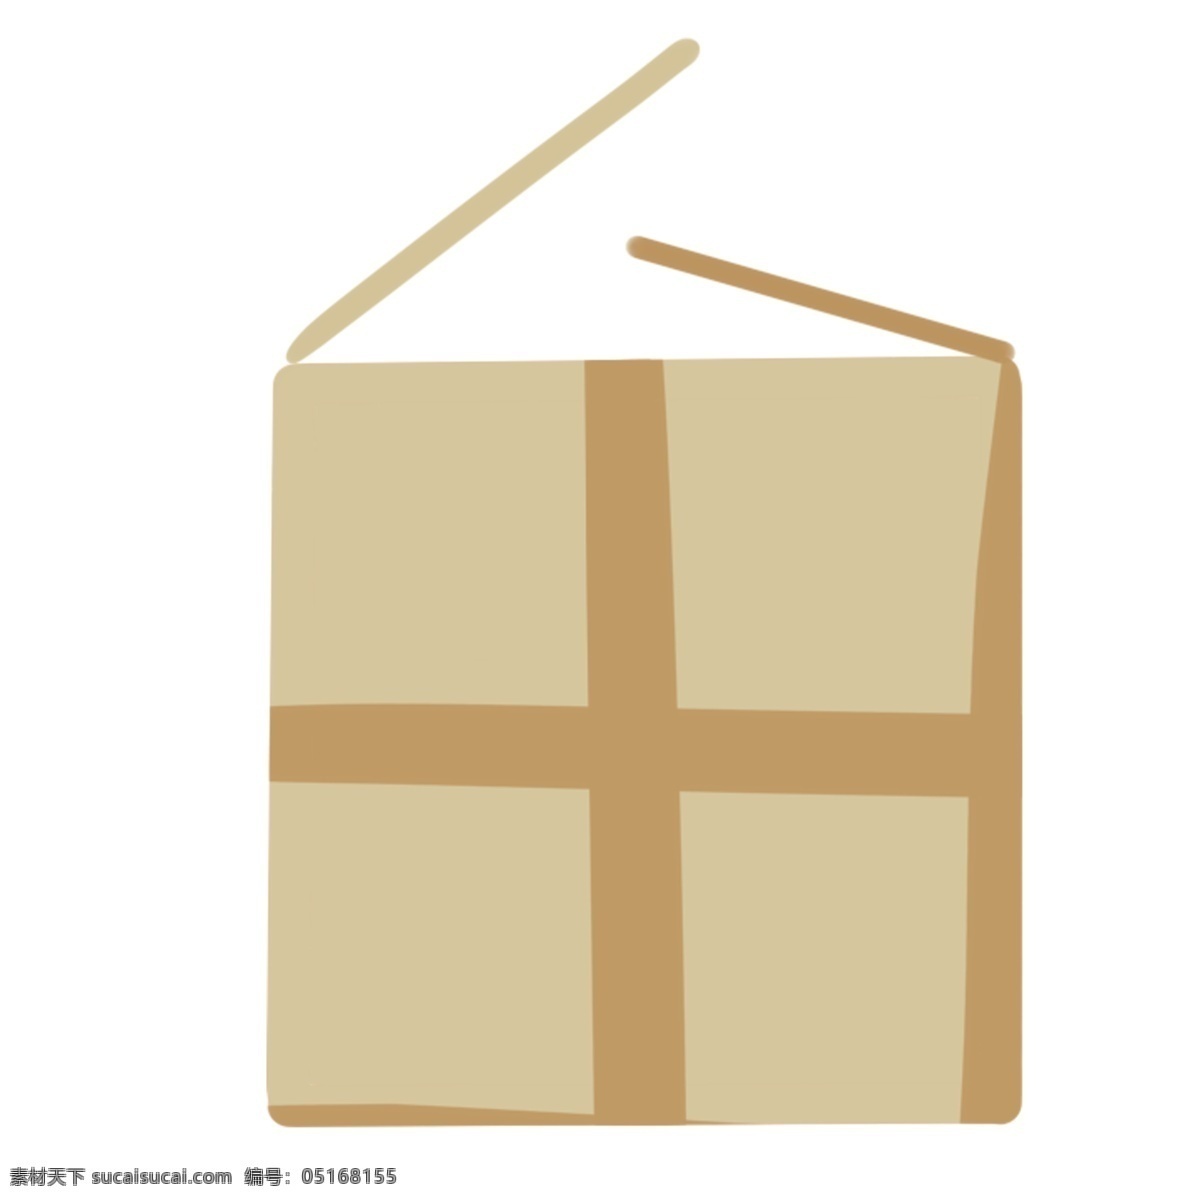 纸箱 卡通 纸箱子 棕色纸箱子 快递箱 包装纸箱 扁平简约纸箱 手绘纸箱 卡通纸箱